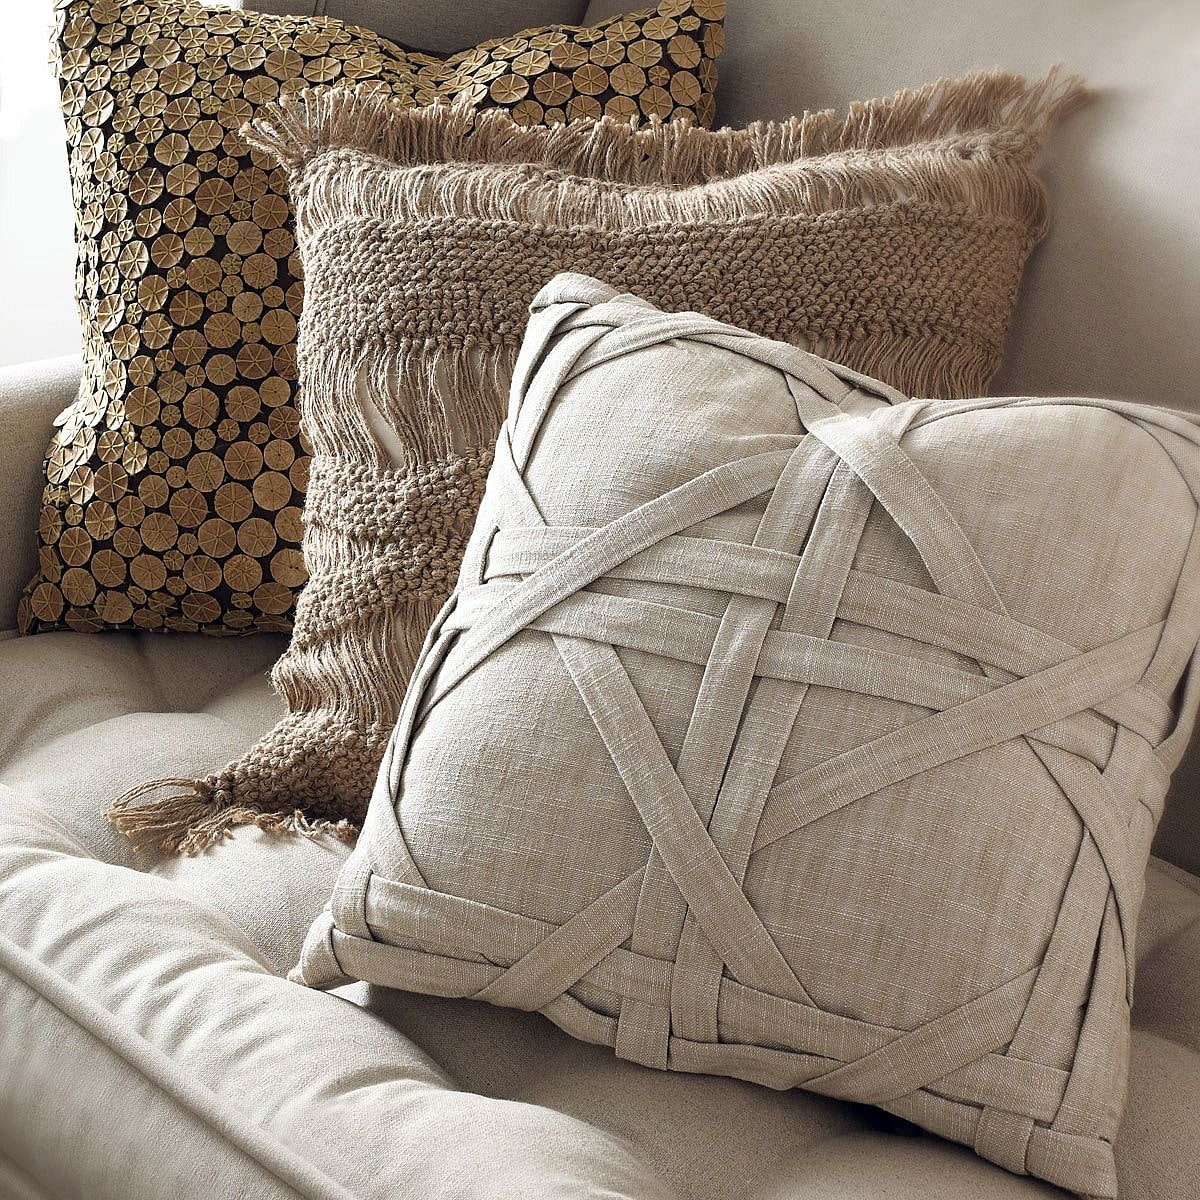 Декоративные подушки - купить дизайнерские диванные подушки от Daisy Maisy